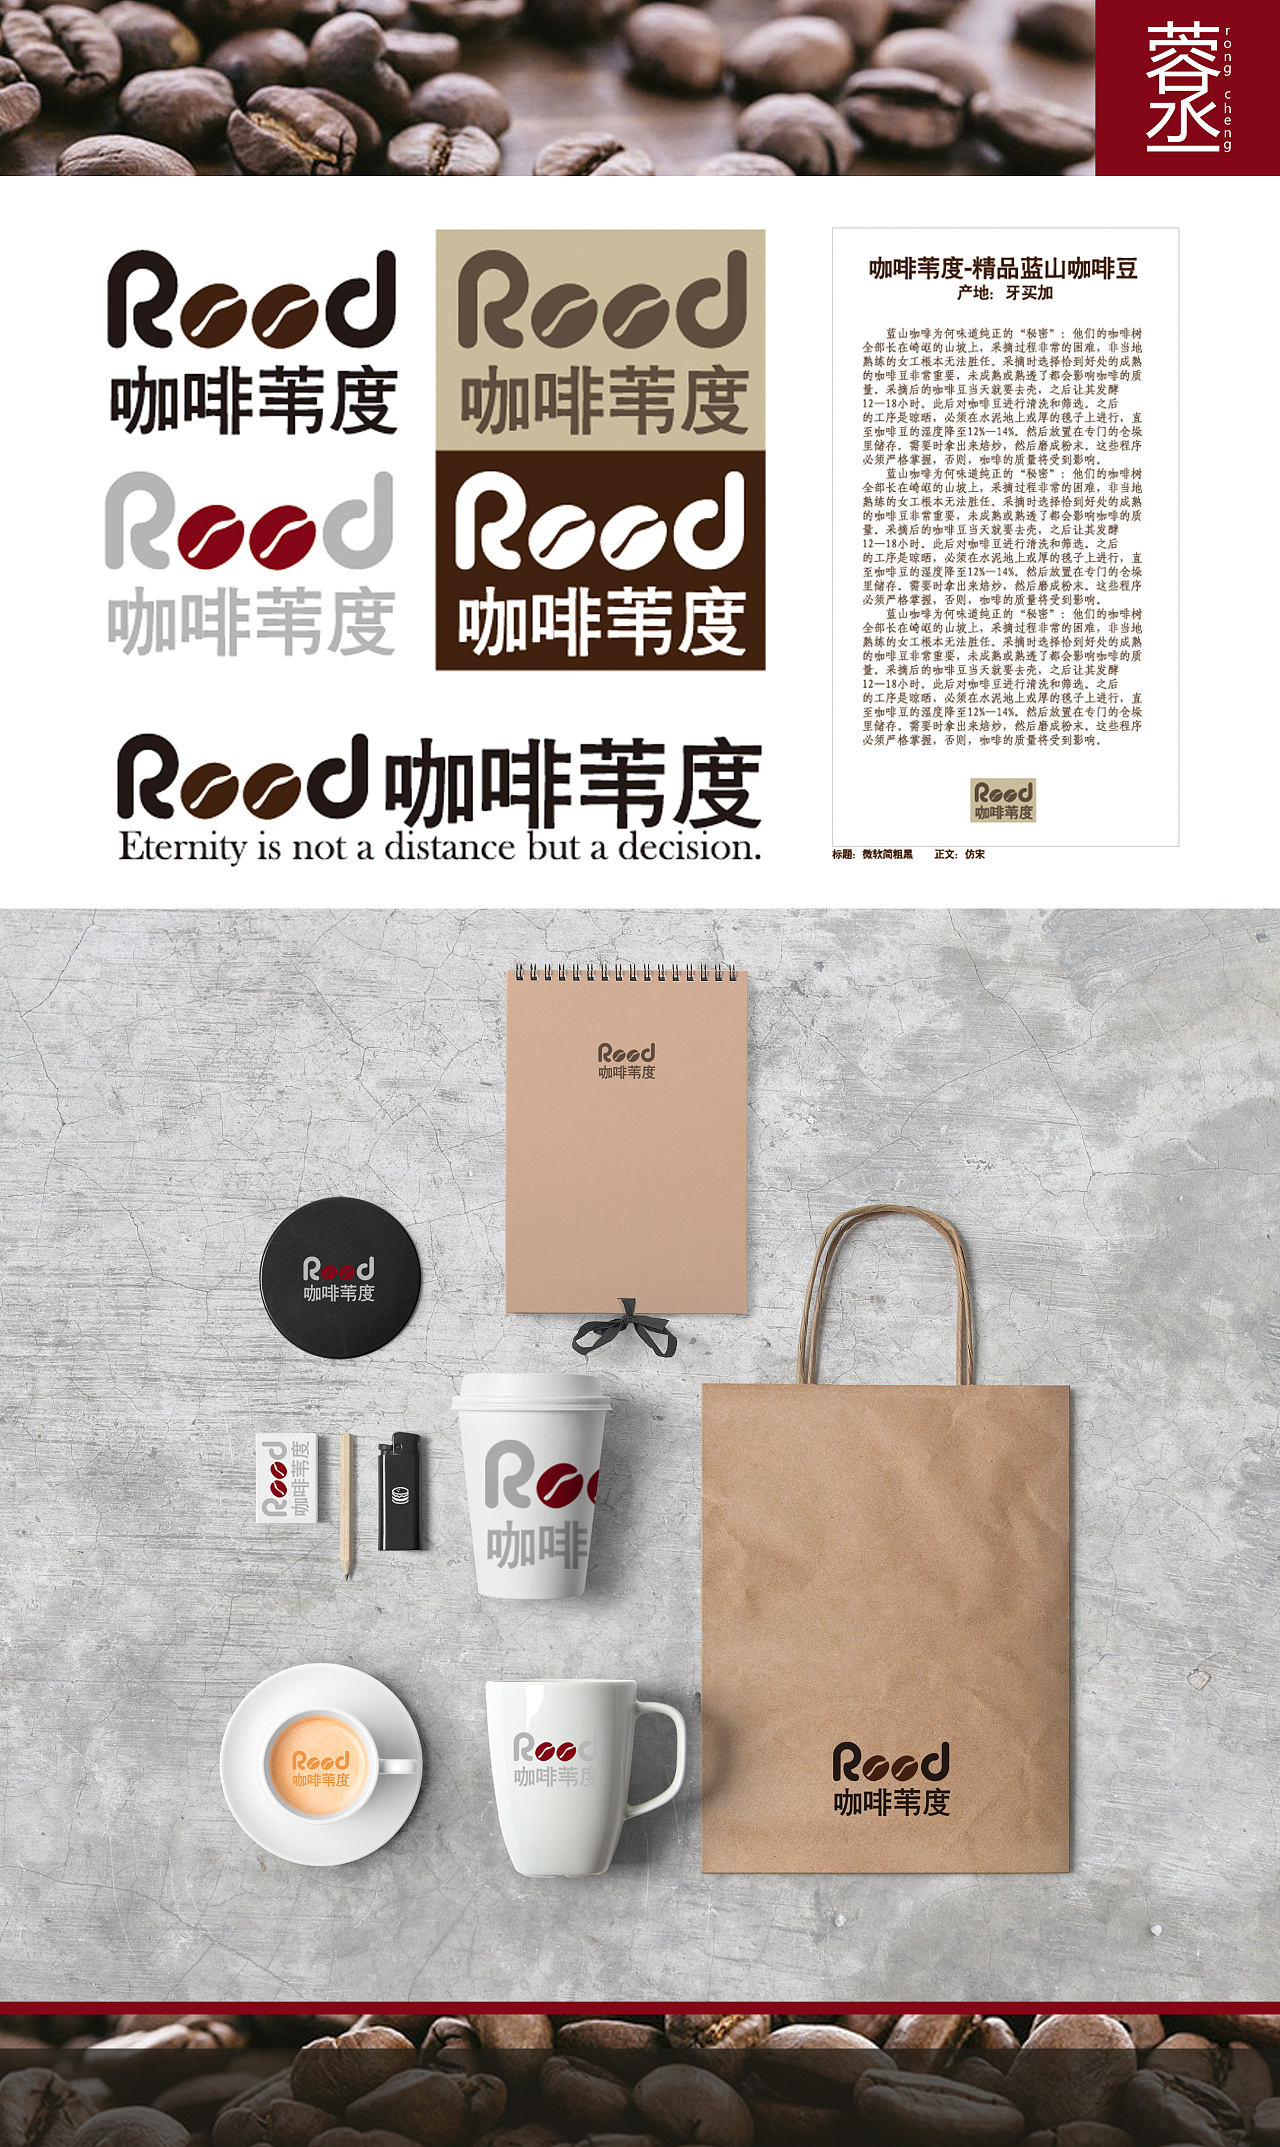 标志设计:咖啡豆品牌的logo设定及vi部分草稿